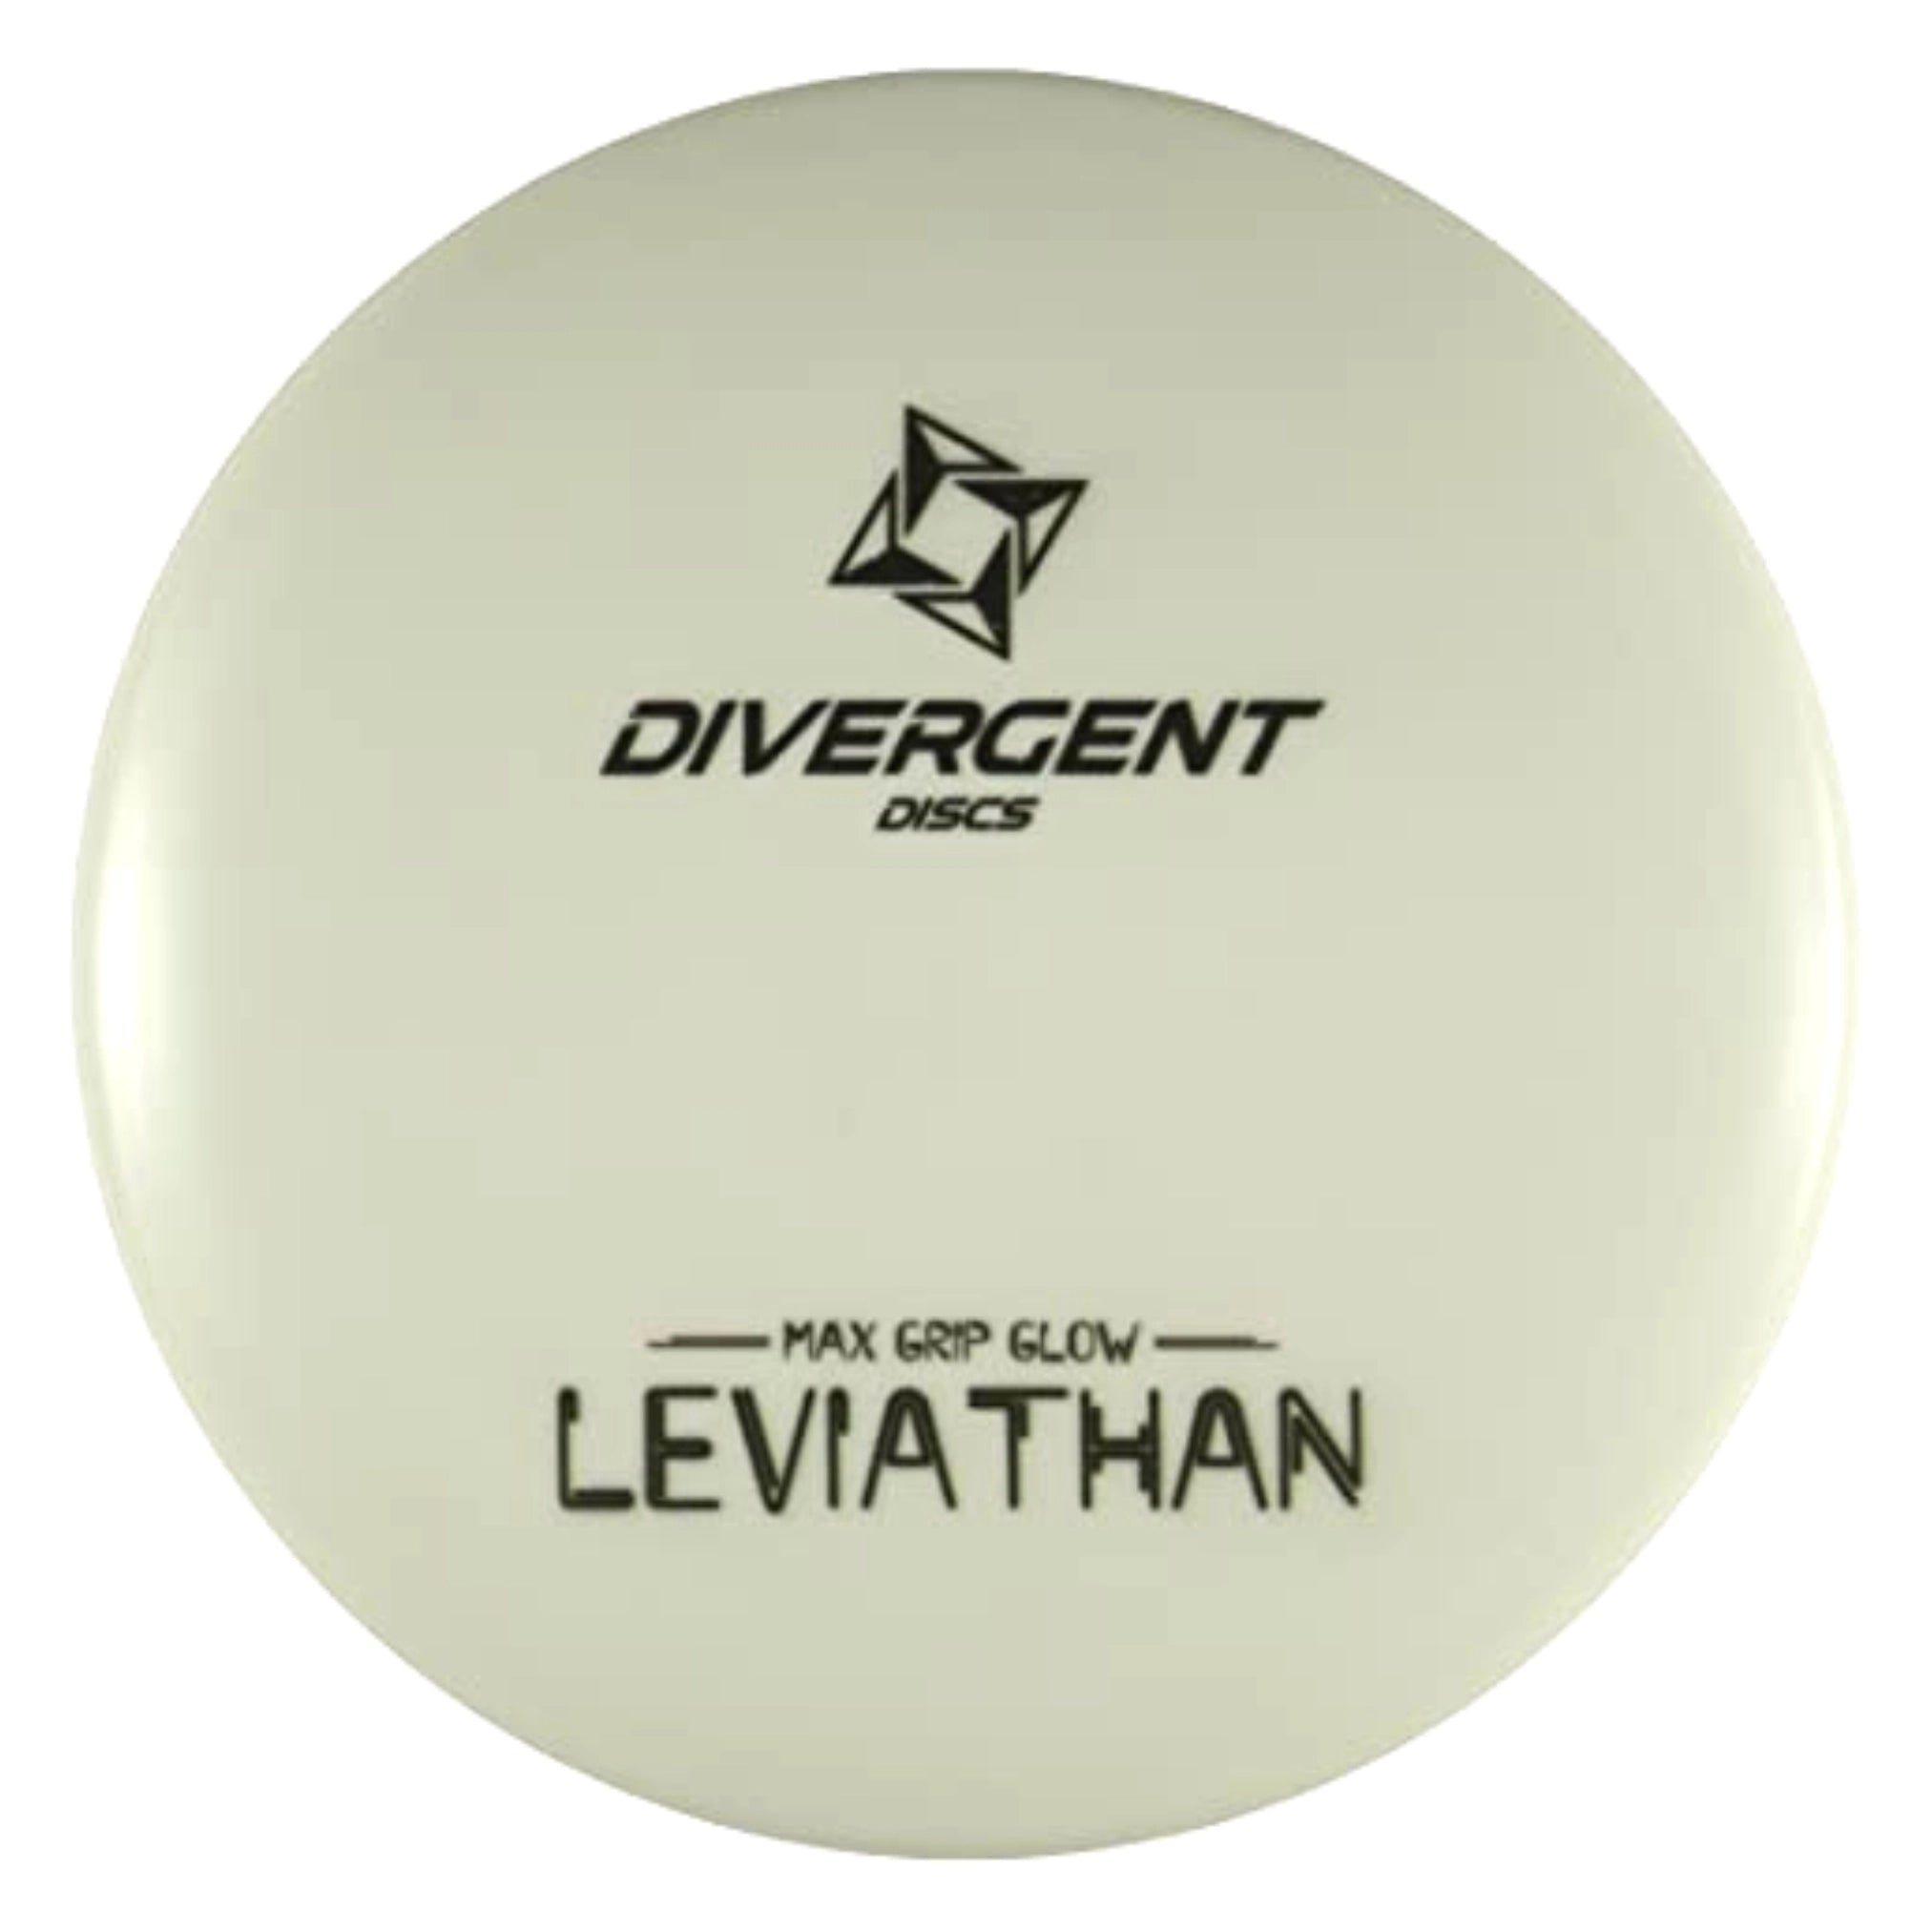 Divergent Discs Leviathan (Max Grip Glow)